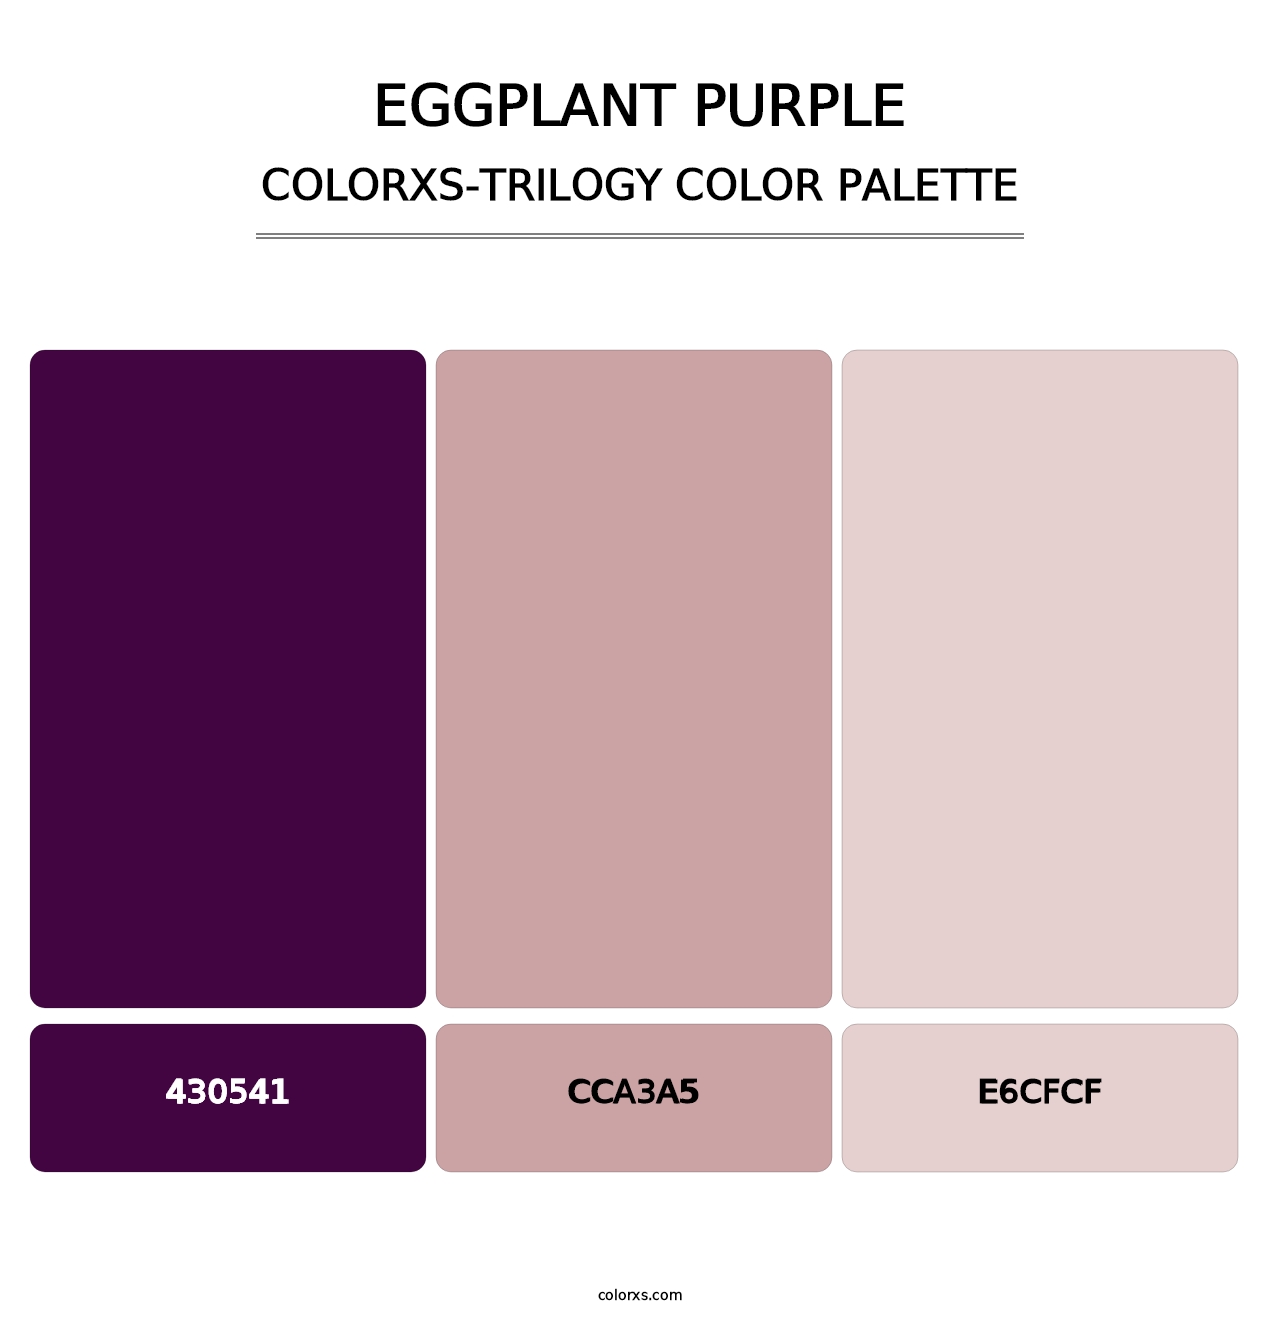 Eggplant Purple - Colorxs Trilogy Palette